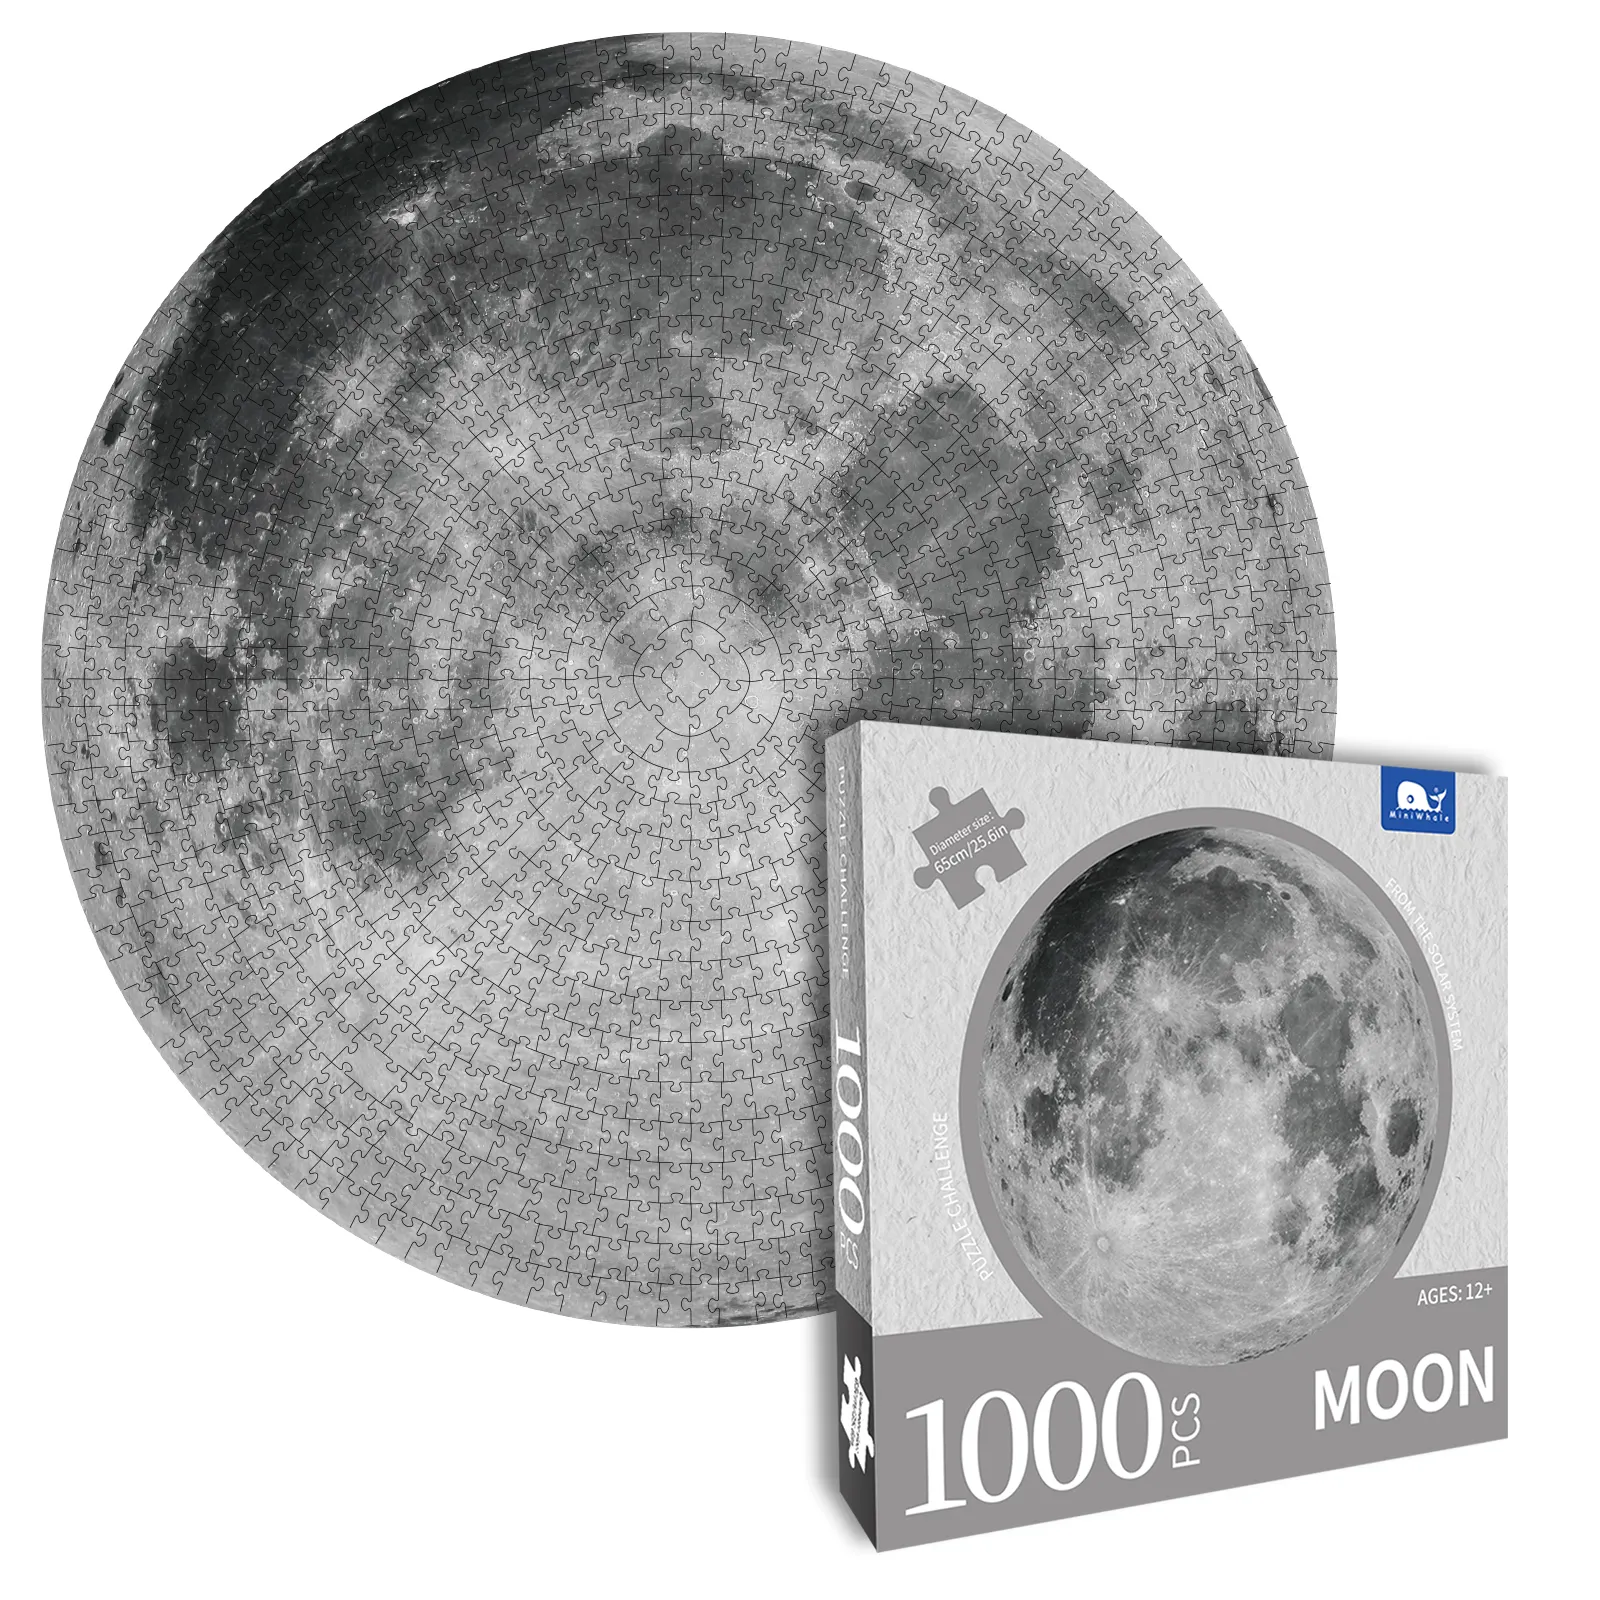 Ücretsiz örnek 1000 adet yap-boz yuvarlak bulmaca oyuncak ay güneş bulmacalar yetişkinler için özel